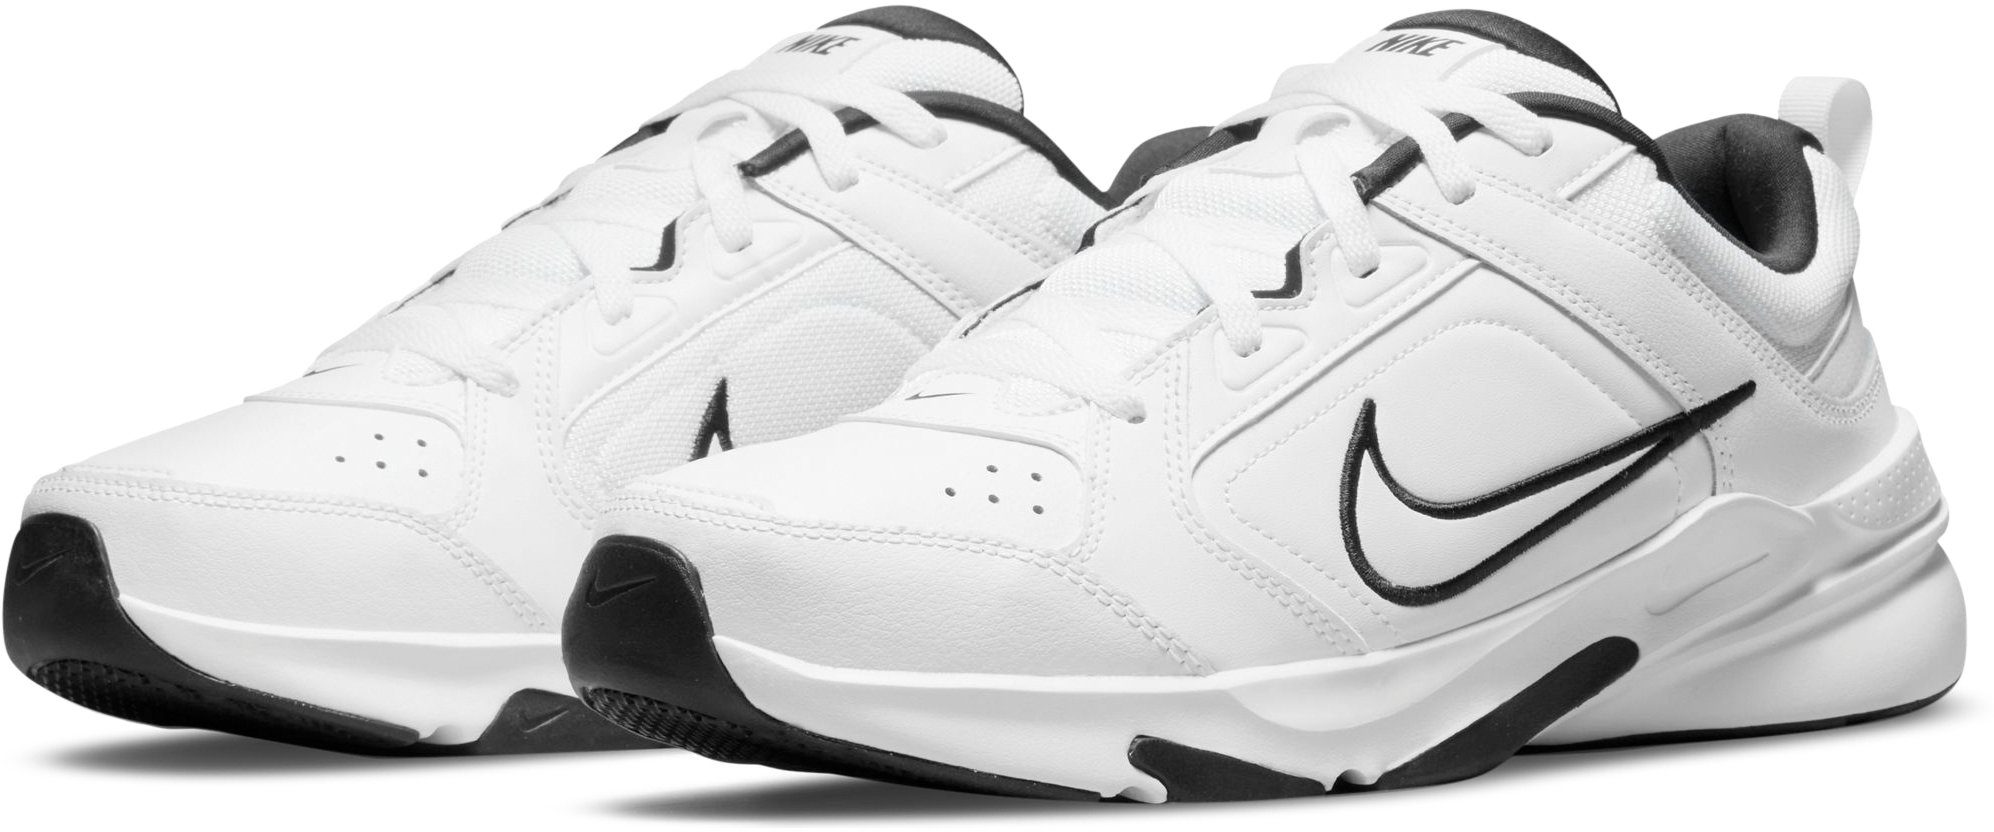 Weiße Nike Herren Schuhe online kaufen | OTTO